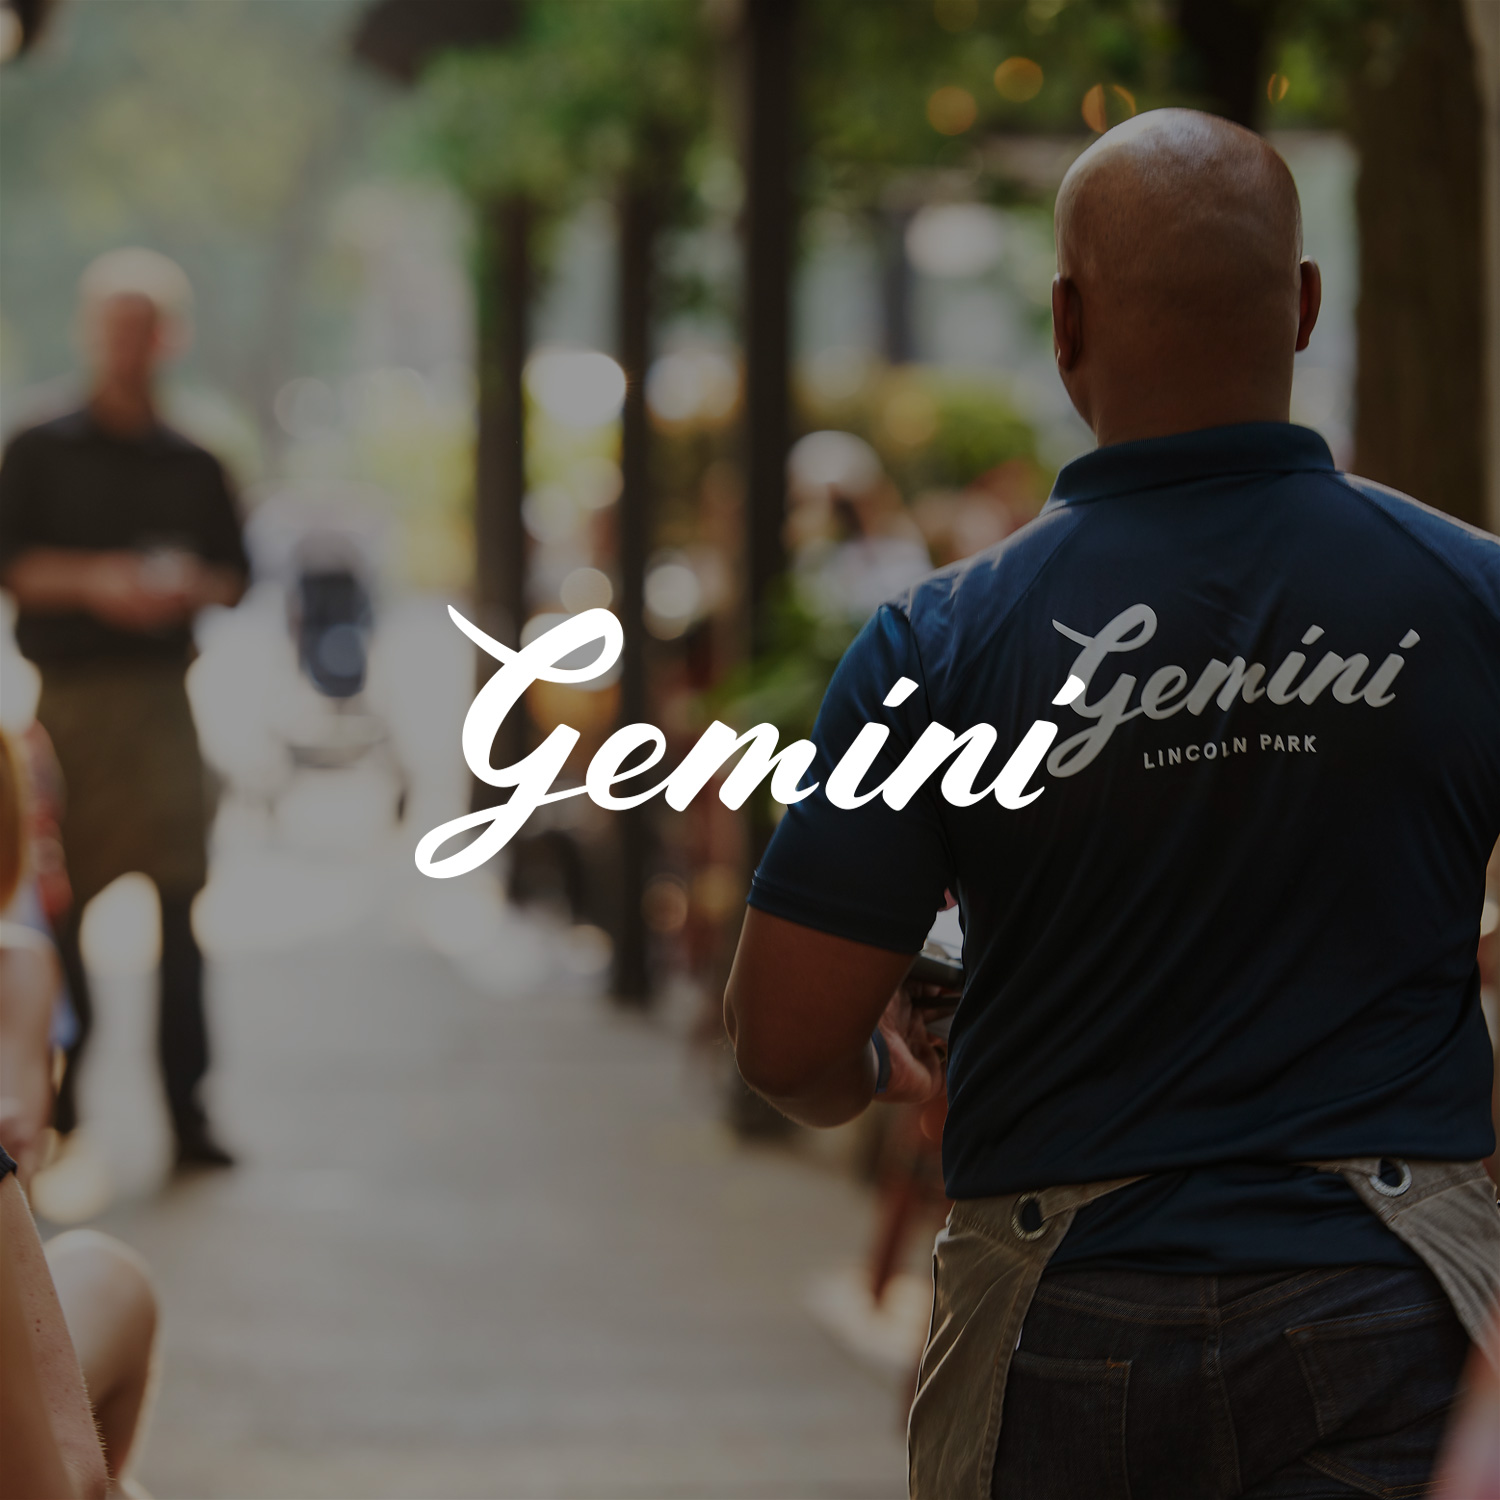 Gemini Restaurant